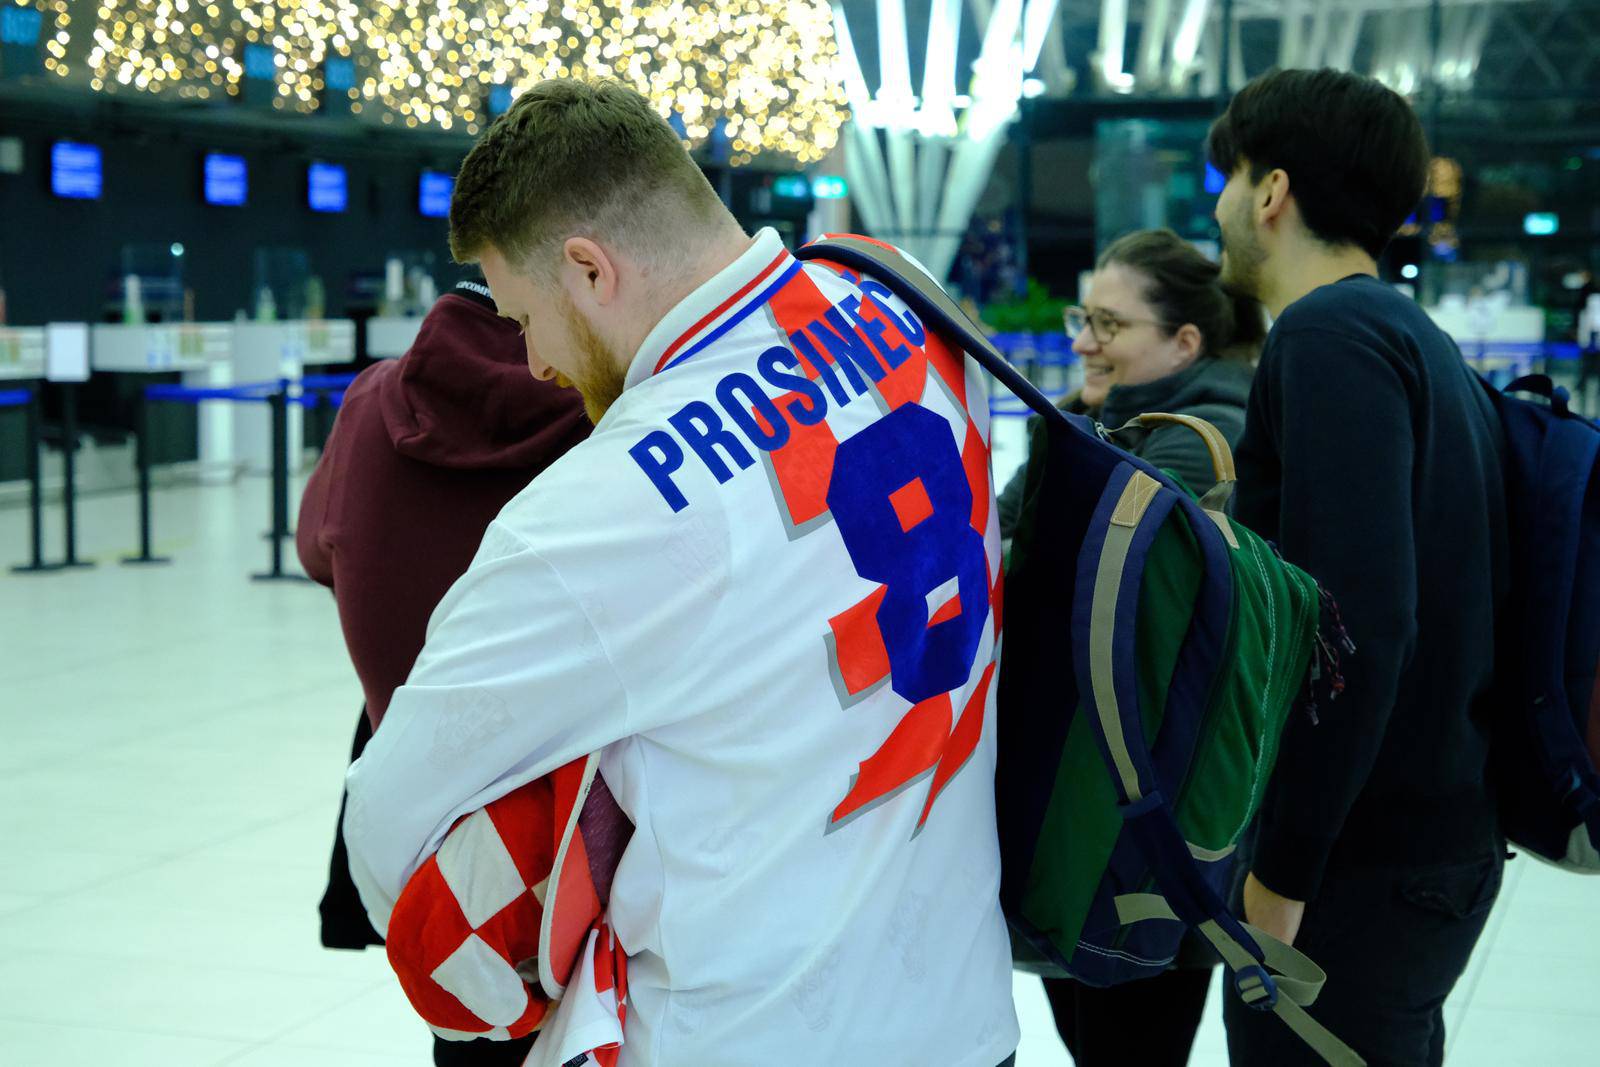 Hrvatski navijači s Plesa kreću prema Dohi dati podršku hrvatskoj nogometnoj reprezentaciji